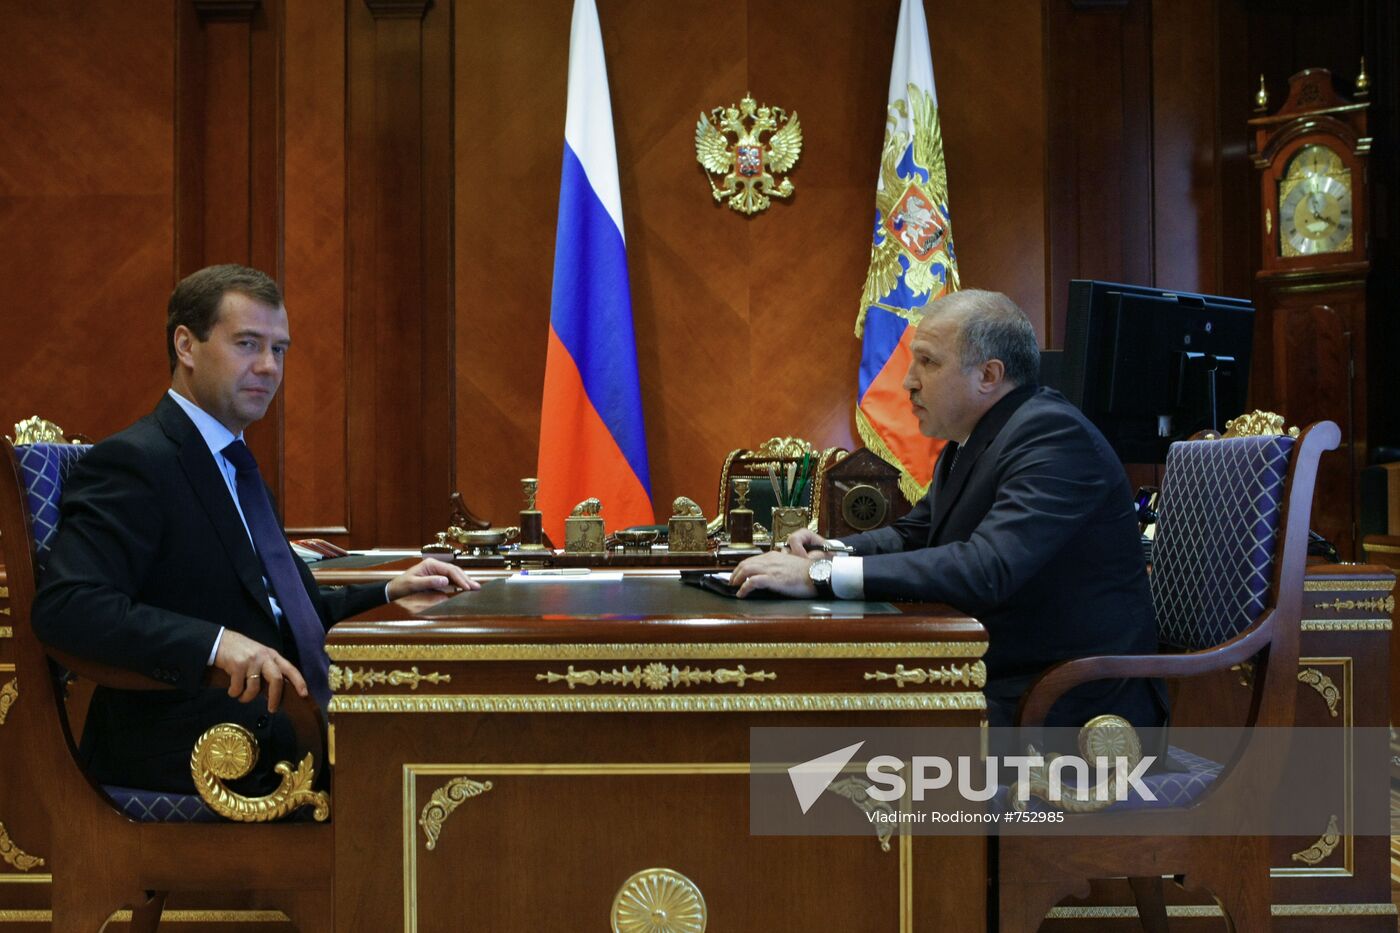 Dmitry Medvedev meeting Eduard Khudaynatov